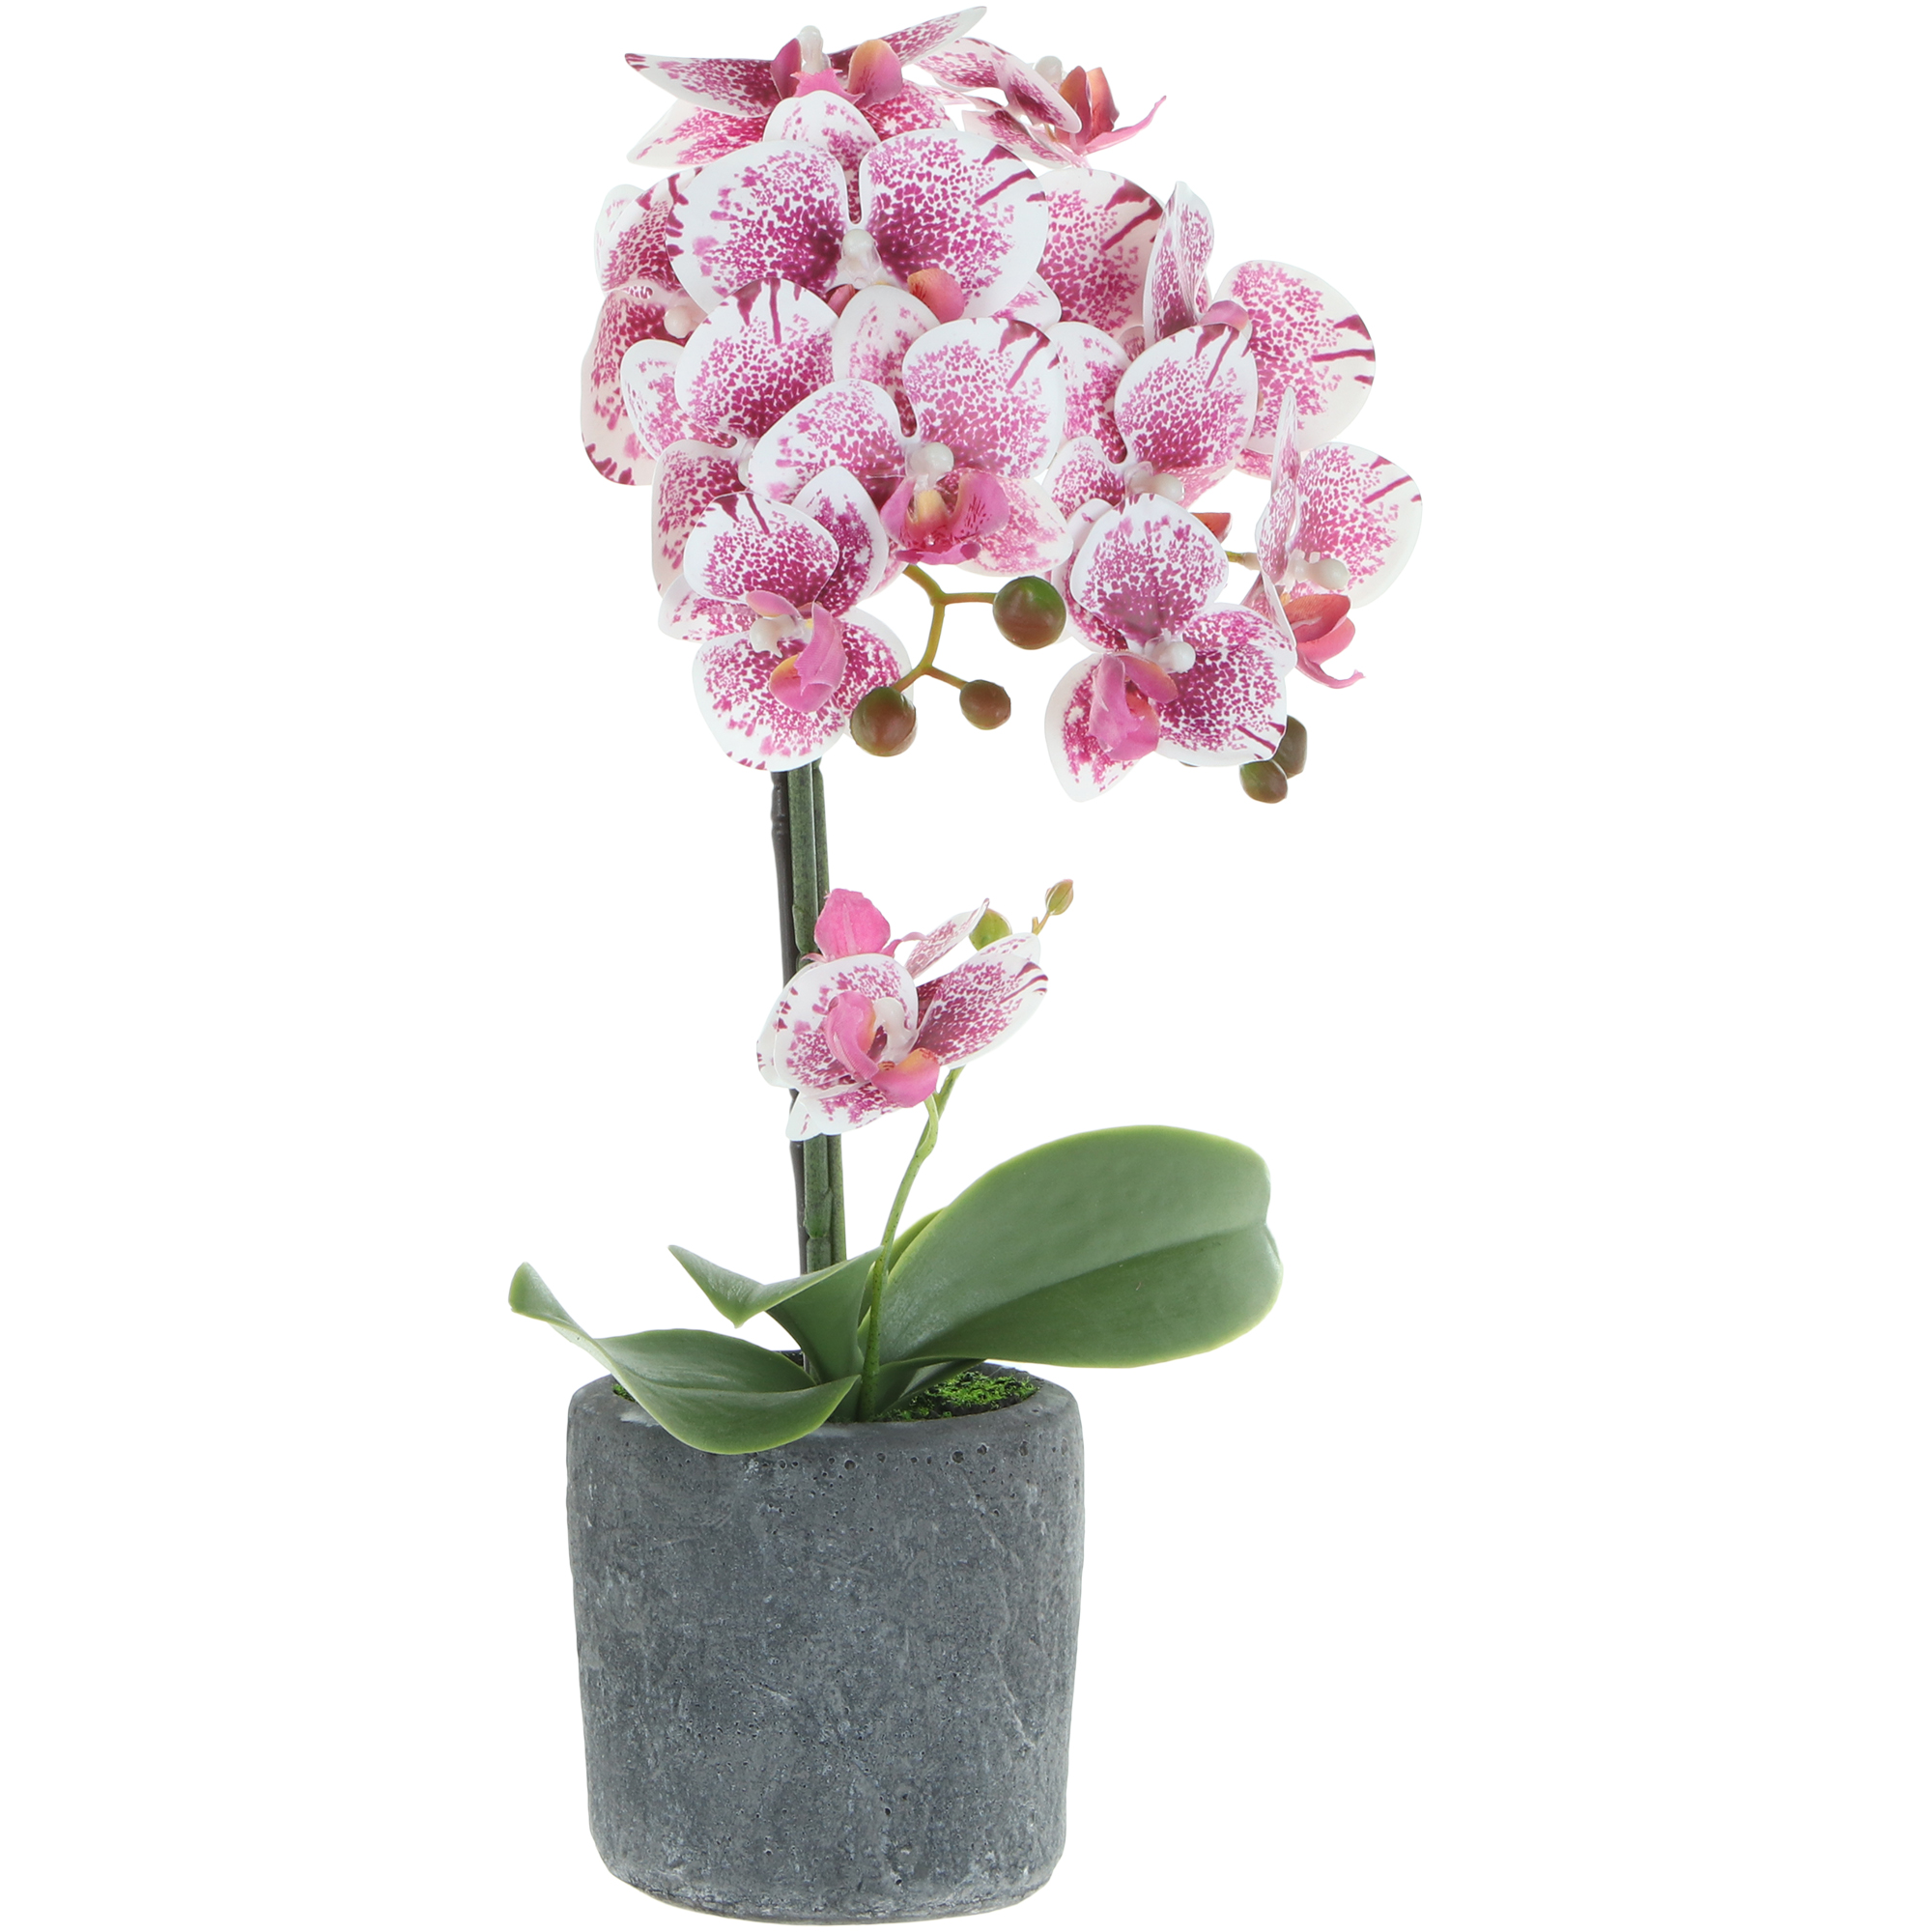 Цветок искусственный в горшке Fuzhou Light орхидея бело-розовая, 3 цвета 42 см цветок искусственный fuzhou light орхидея бело розовая в горшке 54 см